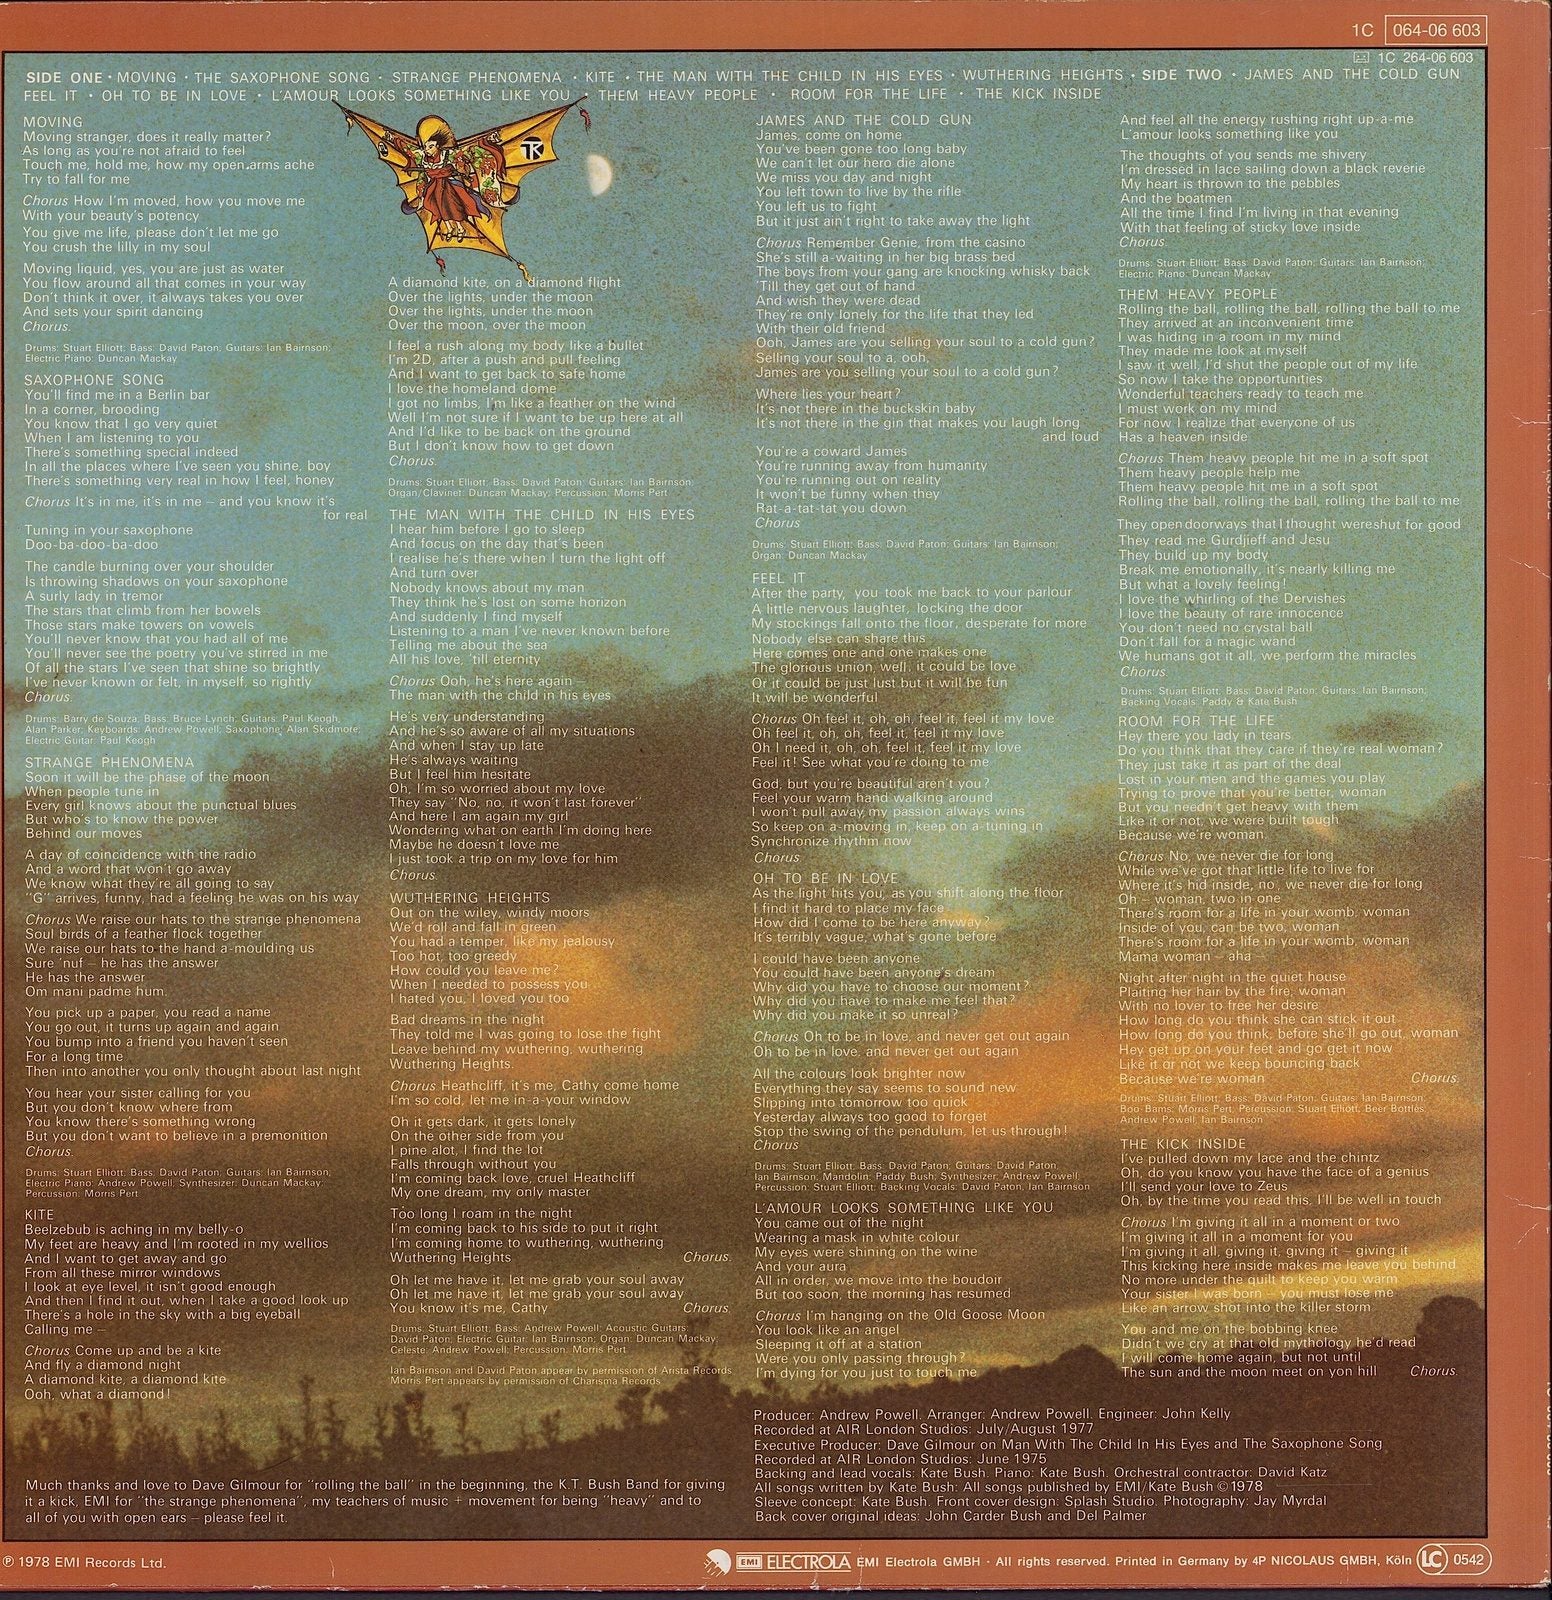 Kate Bush ‎- The Kick Inside Vinyl LP